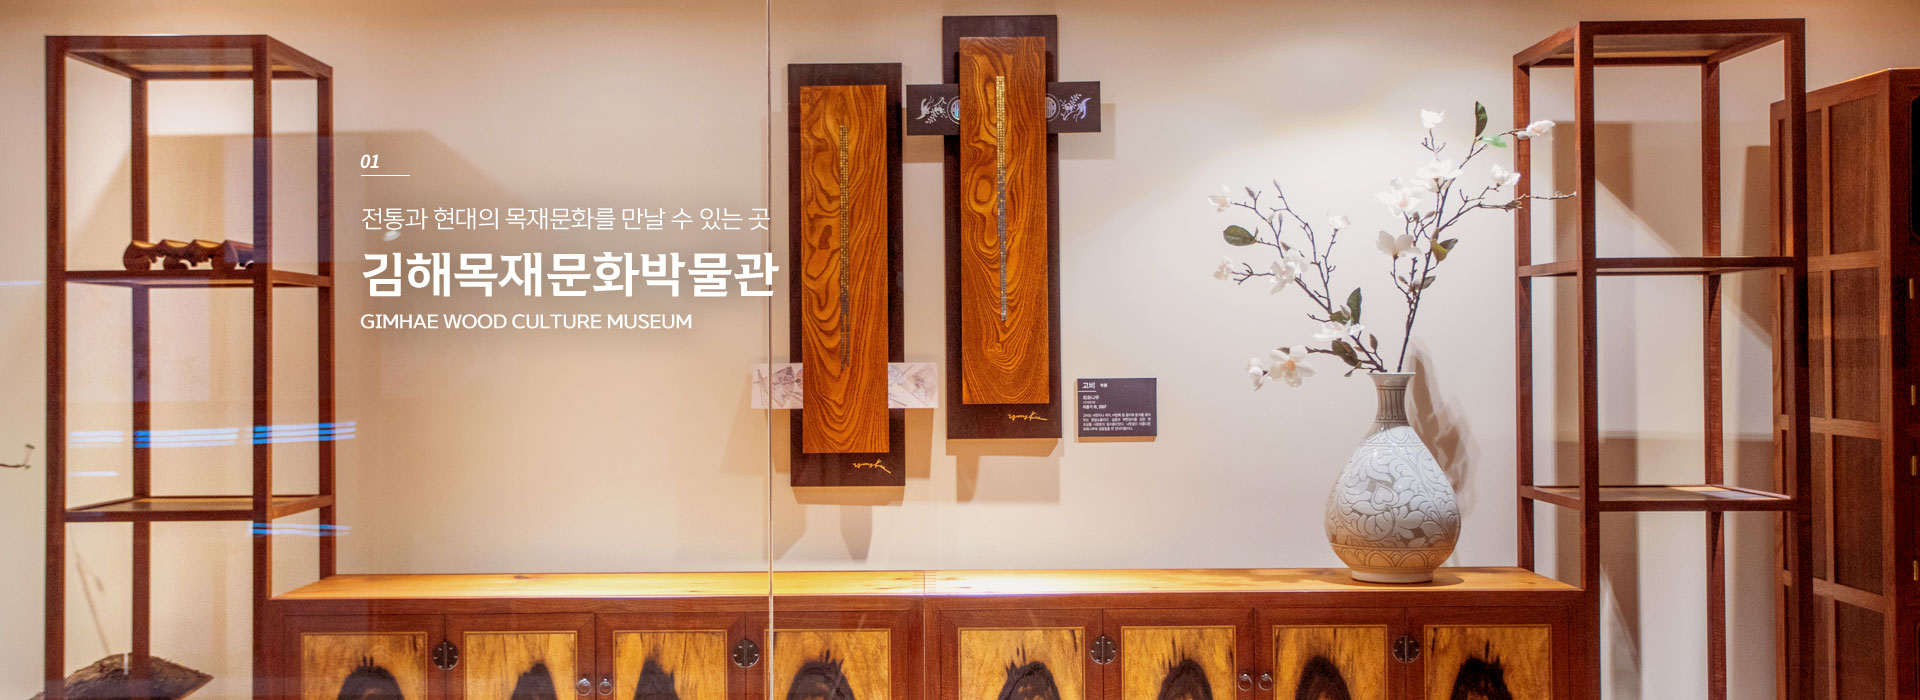 01. 전통과 현대의 목재문화를 만날 수 있는 곳. 김해목재문화박물관 GIMHAE WOOD CULTURE MUSEUM